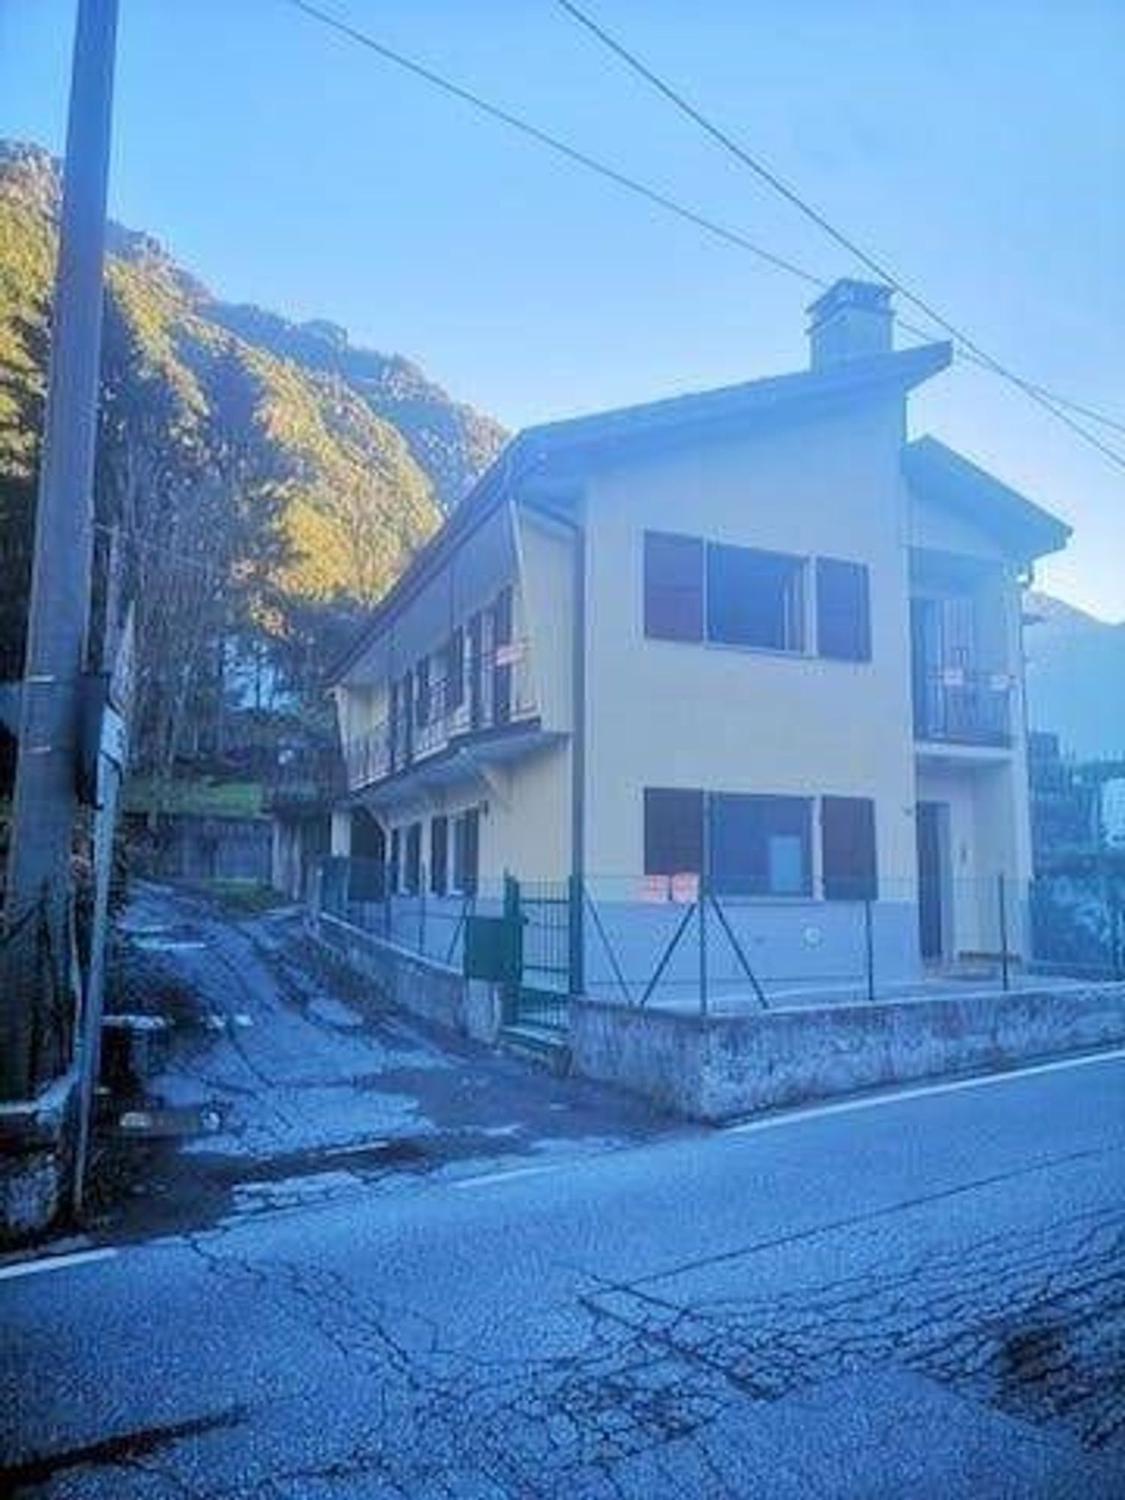 Appartamento in vendita a Valbondione, 4 locali, prezzo € 70.000 | PortaleAgenzieImmobiliari.it